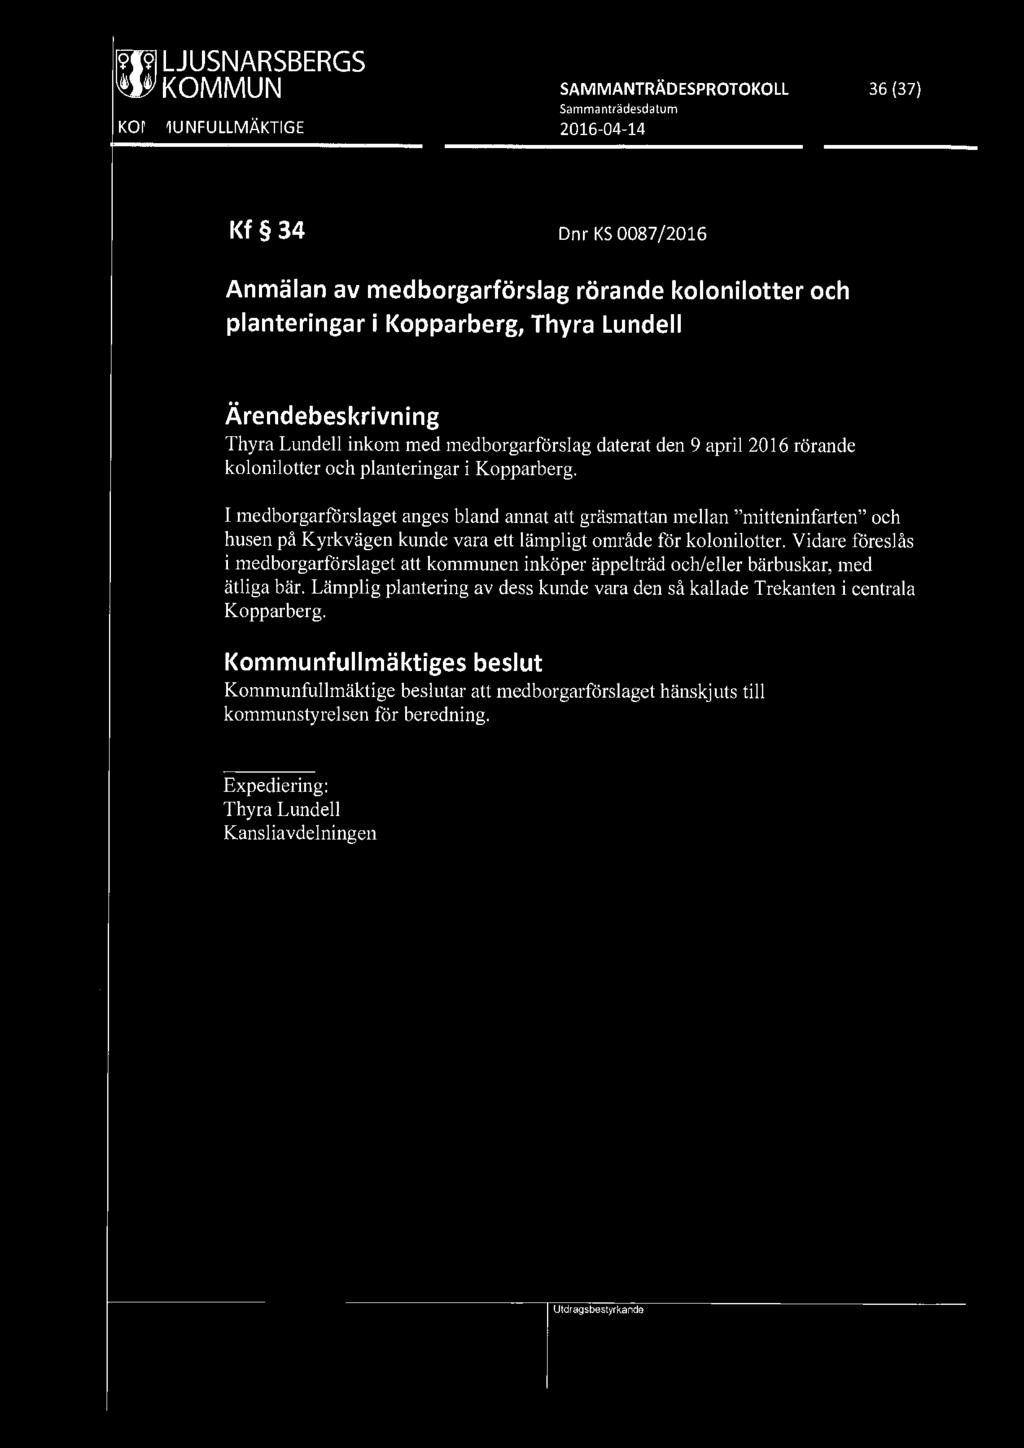 [919] LJUSNARSBERGS ~ KOMMUN SAMMANTRÄDESPROTOKOLL 36 (37) Kf 34 Dnr KS 0087 /2016 Anmälan av medborgarförslag rörande kolonilotter och planteringar i Kopparberg, Thyra Lundell Thyra Lundell